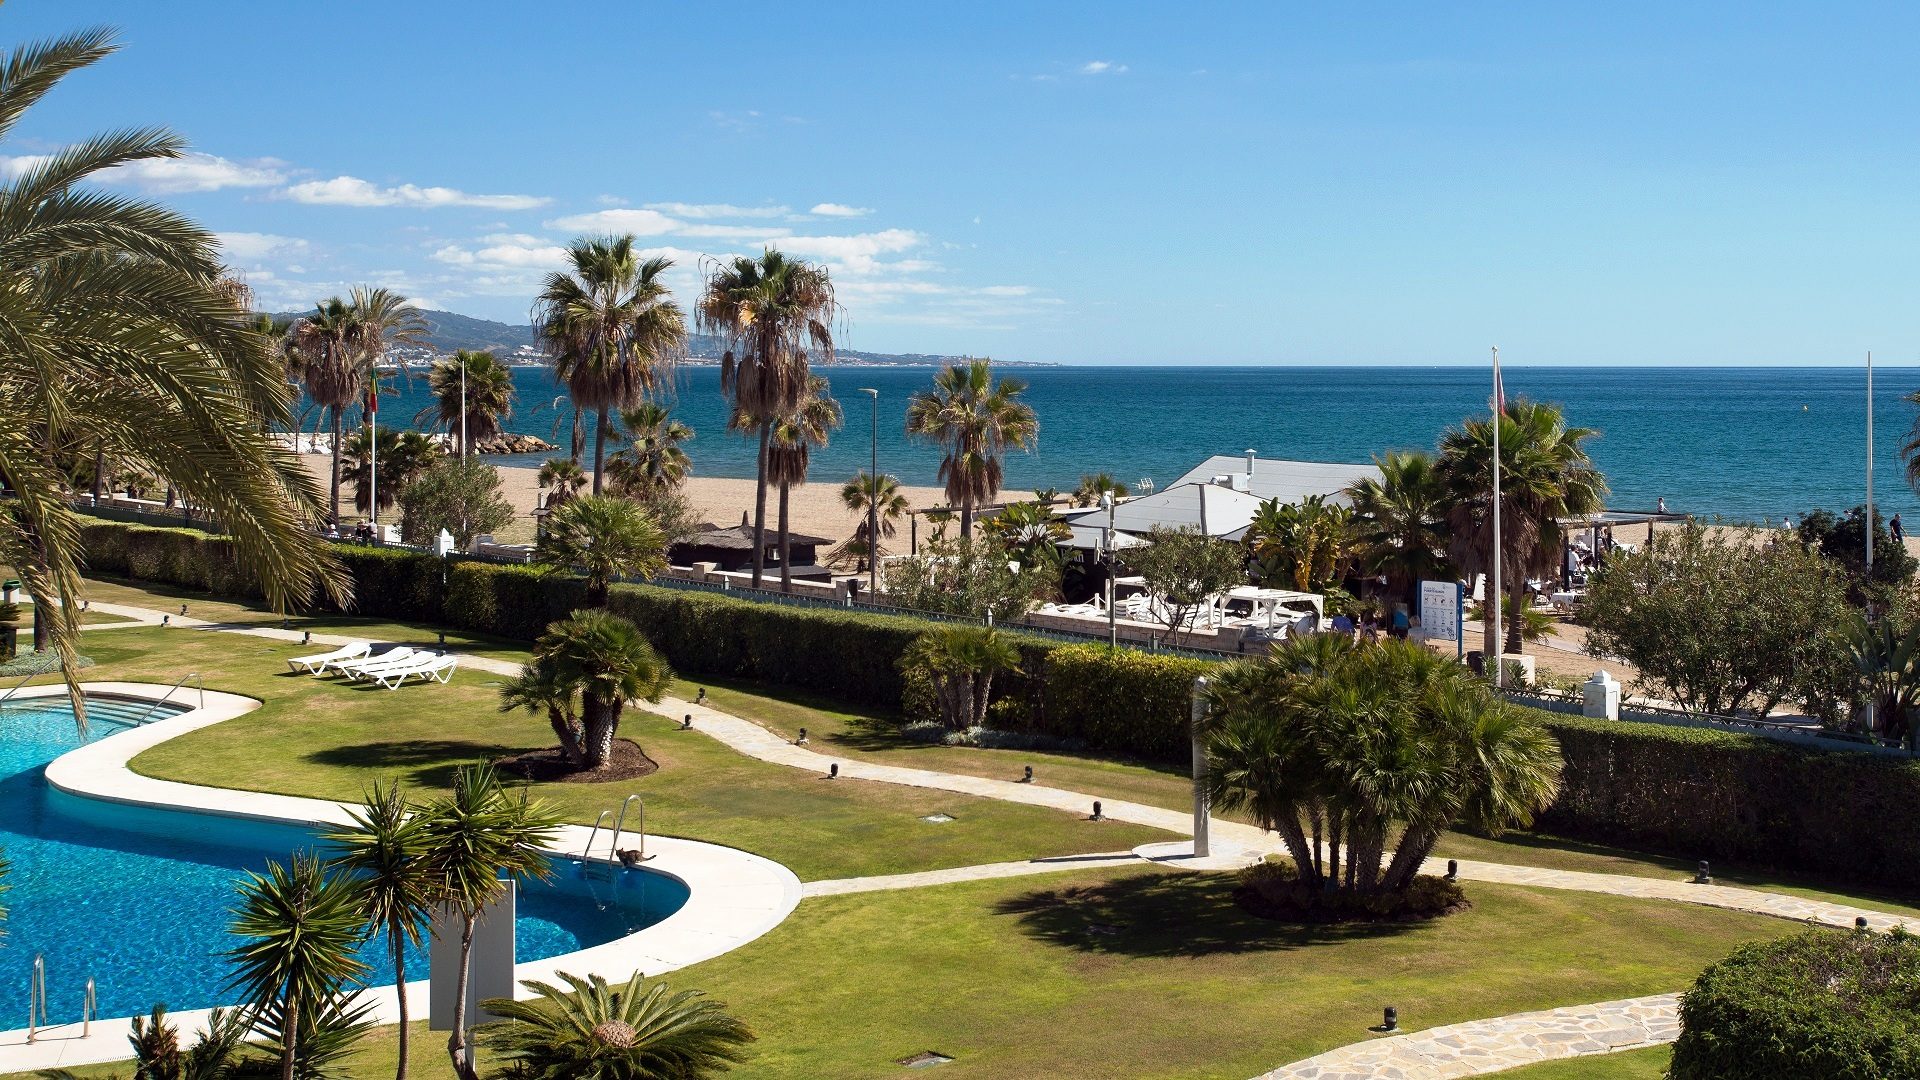 Camarotes residenciales... las mejores urbanizaciones frontales al mar - Inmobiliaria Marbella Unique Properties